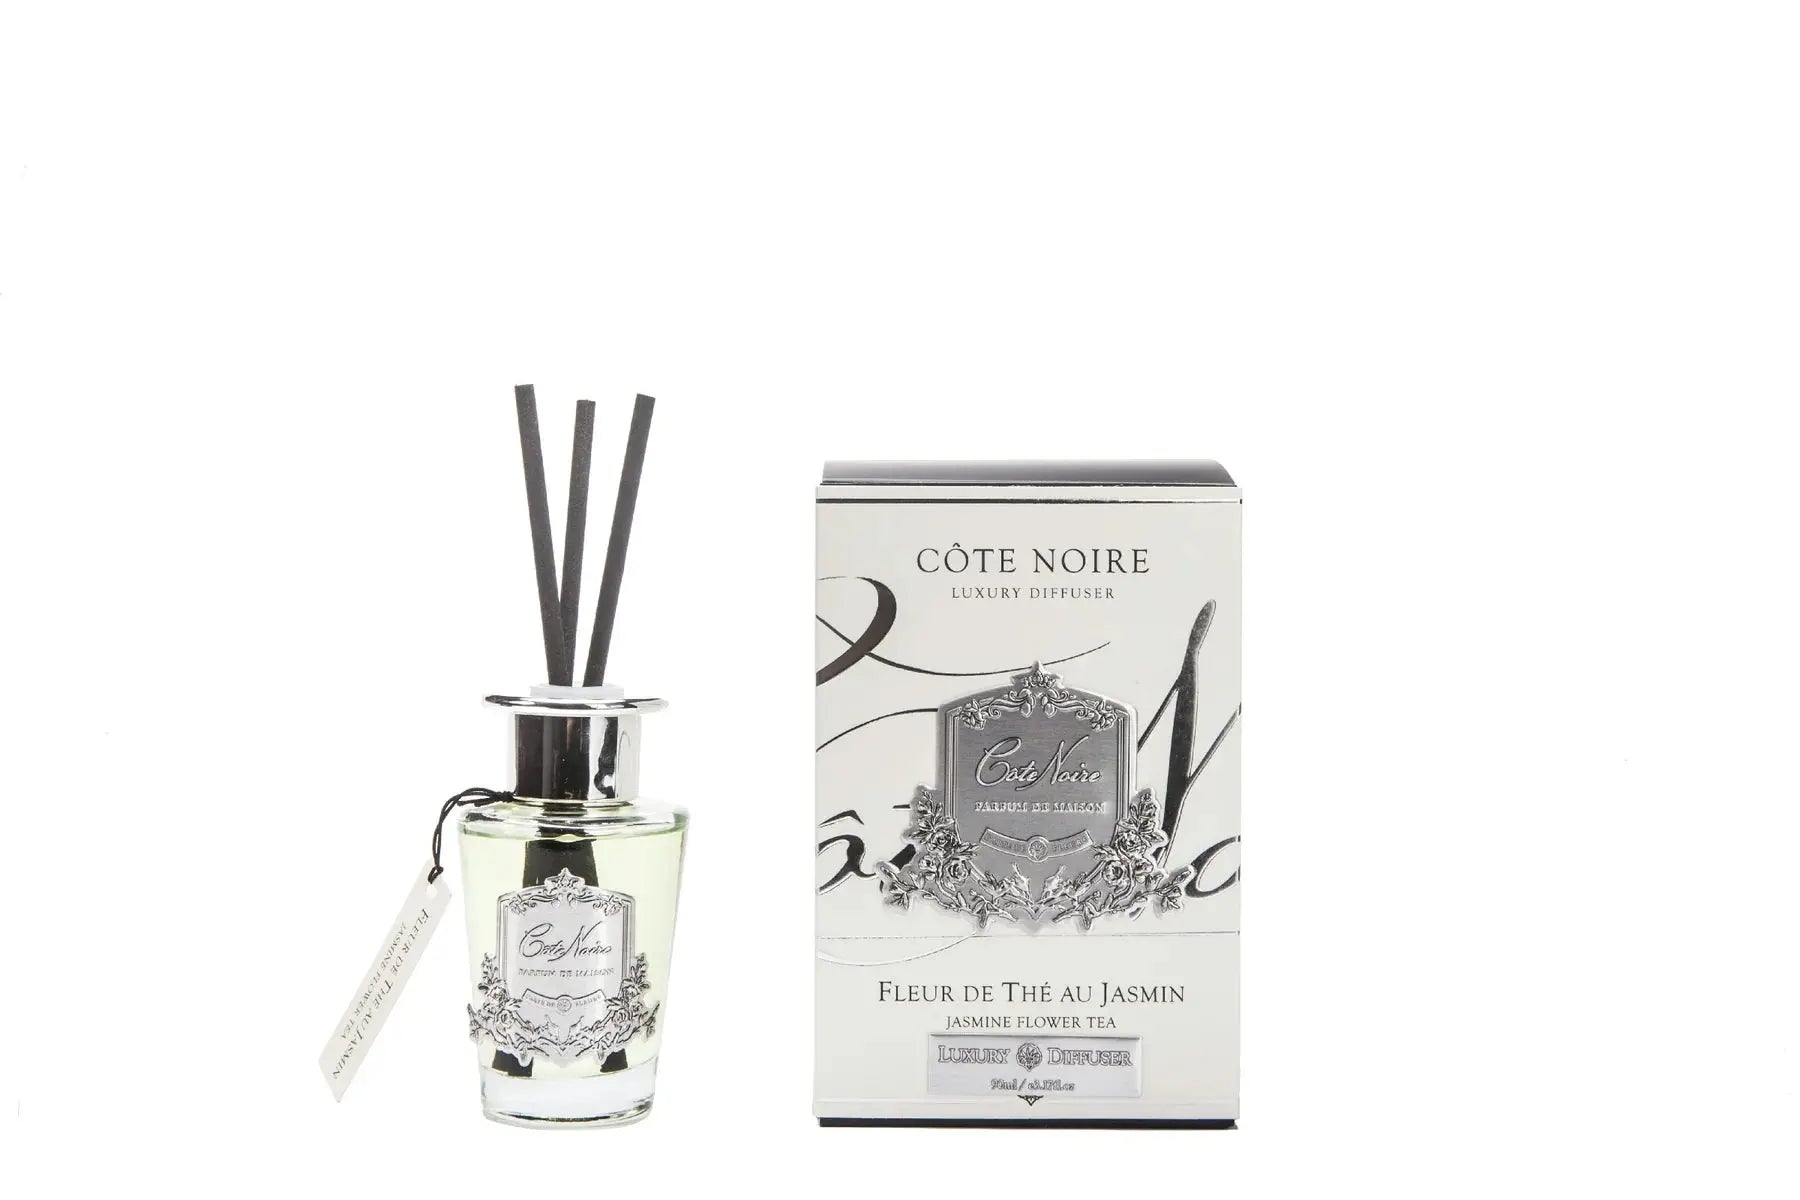 Cote Noire 90ml Diffuser Set - Jasmine Flower Tea -  Cote Noire -  Armani Gallery